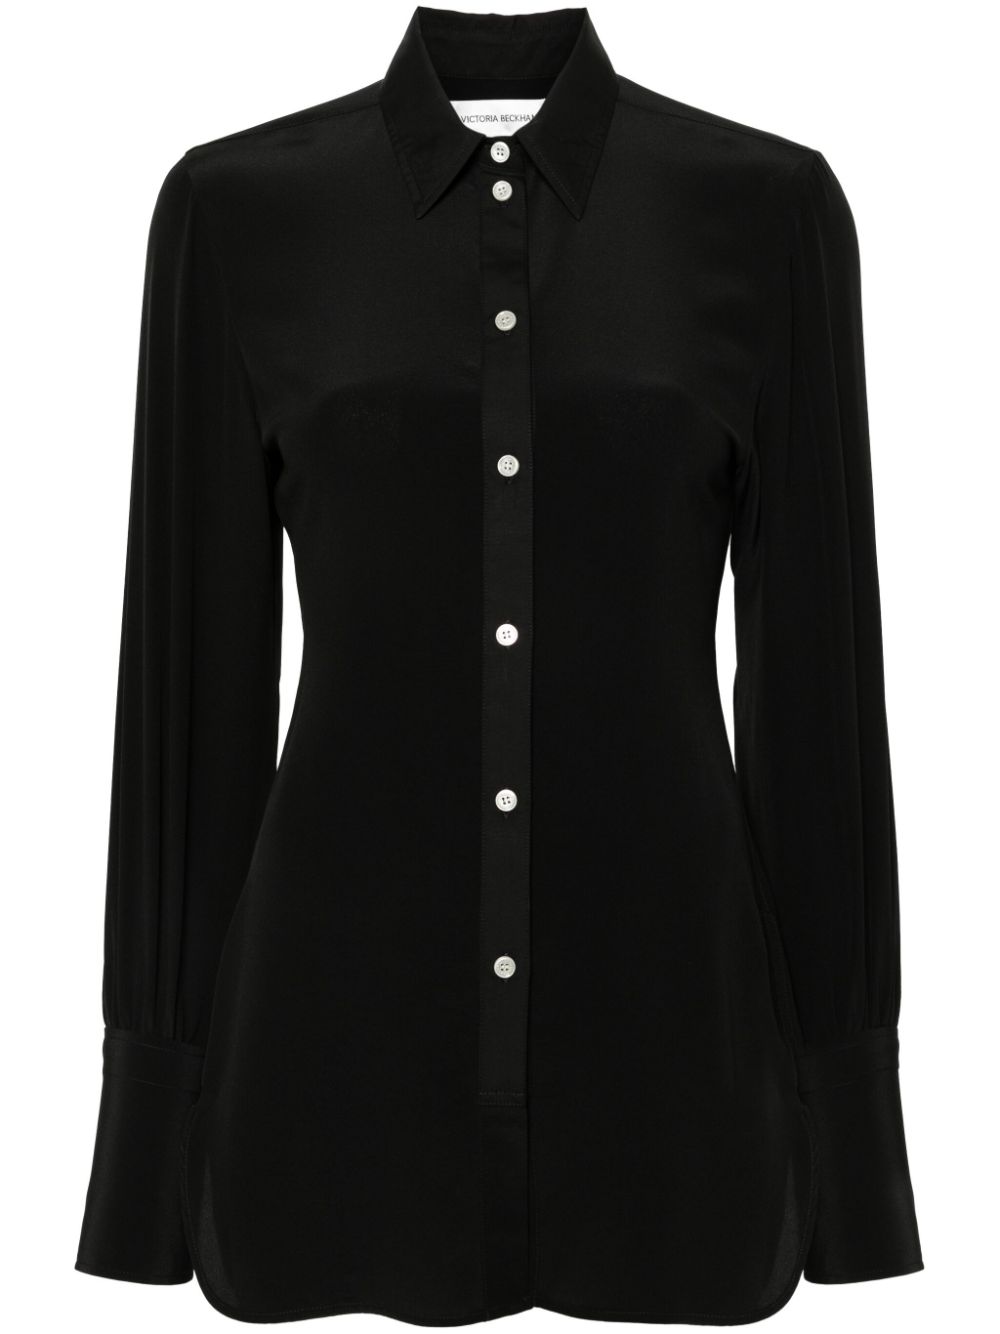 Victoria Beckham silk shirt - Black von Victoria Beckham